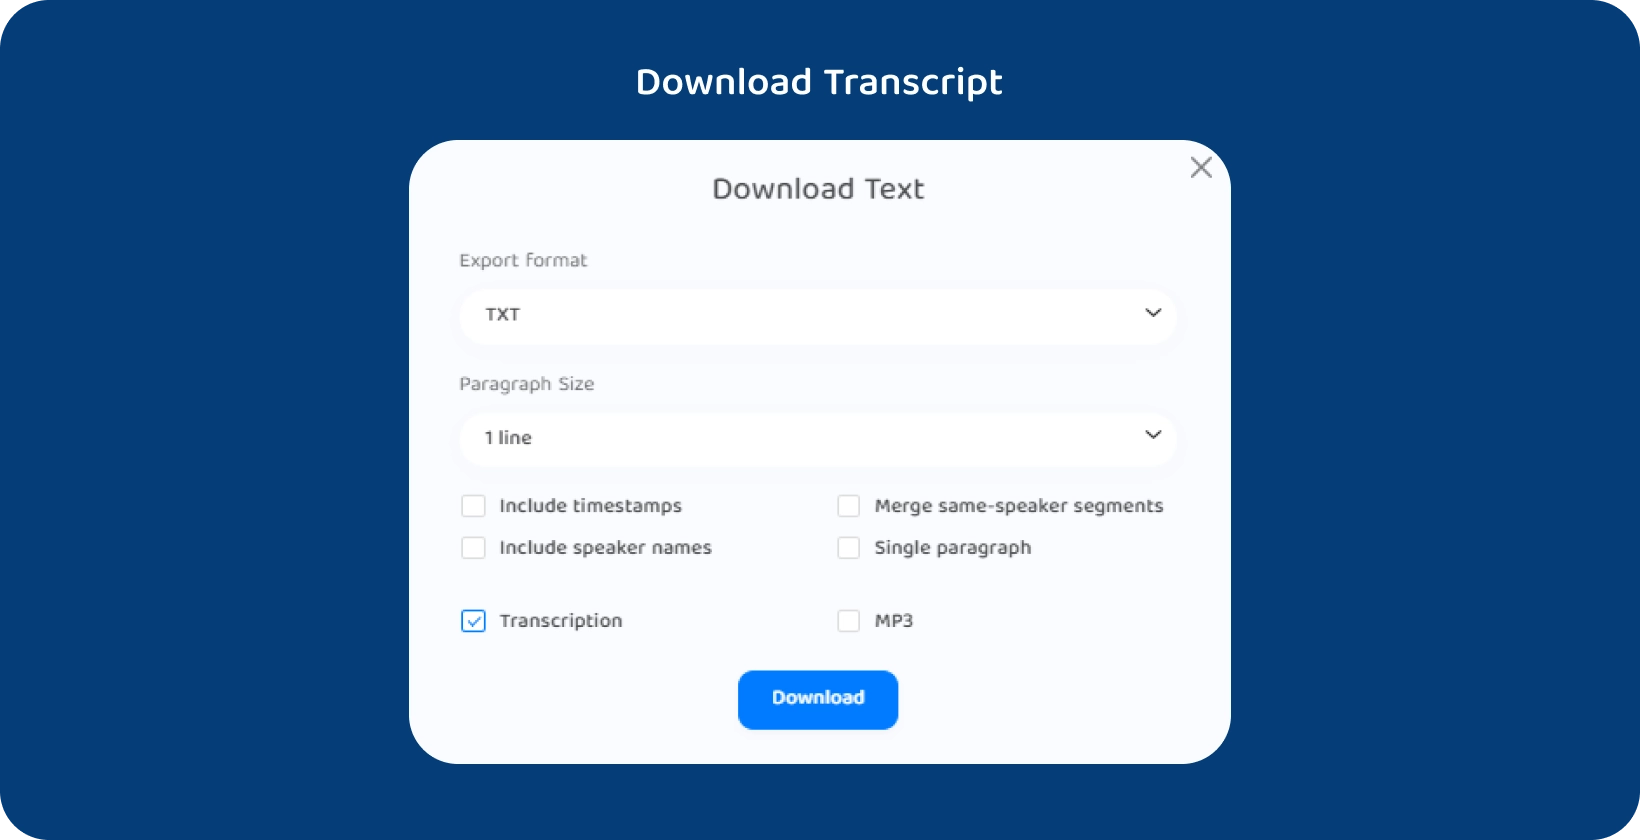 Transkriptor grænseflade, der viser muligheder for at downloade teksten til et transskriberet foredrag.